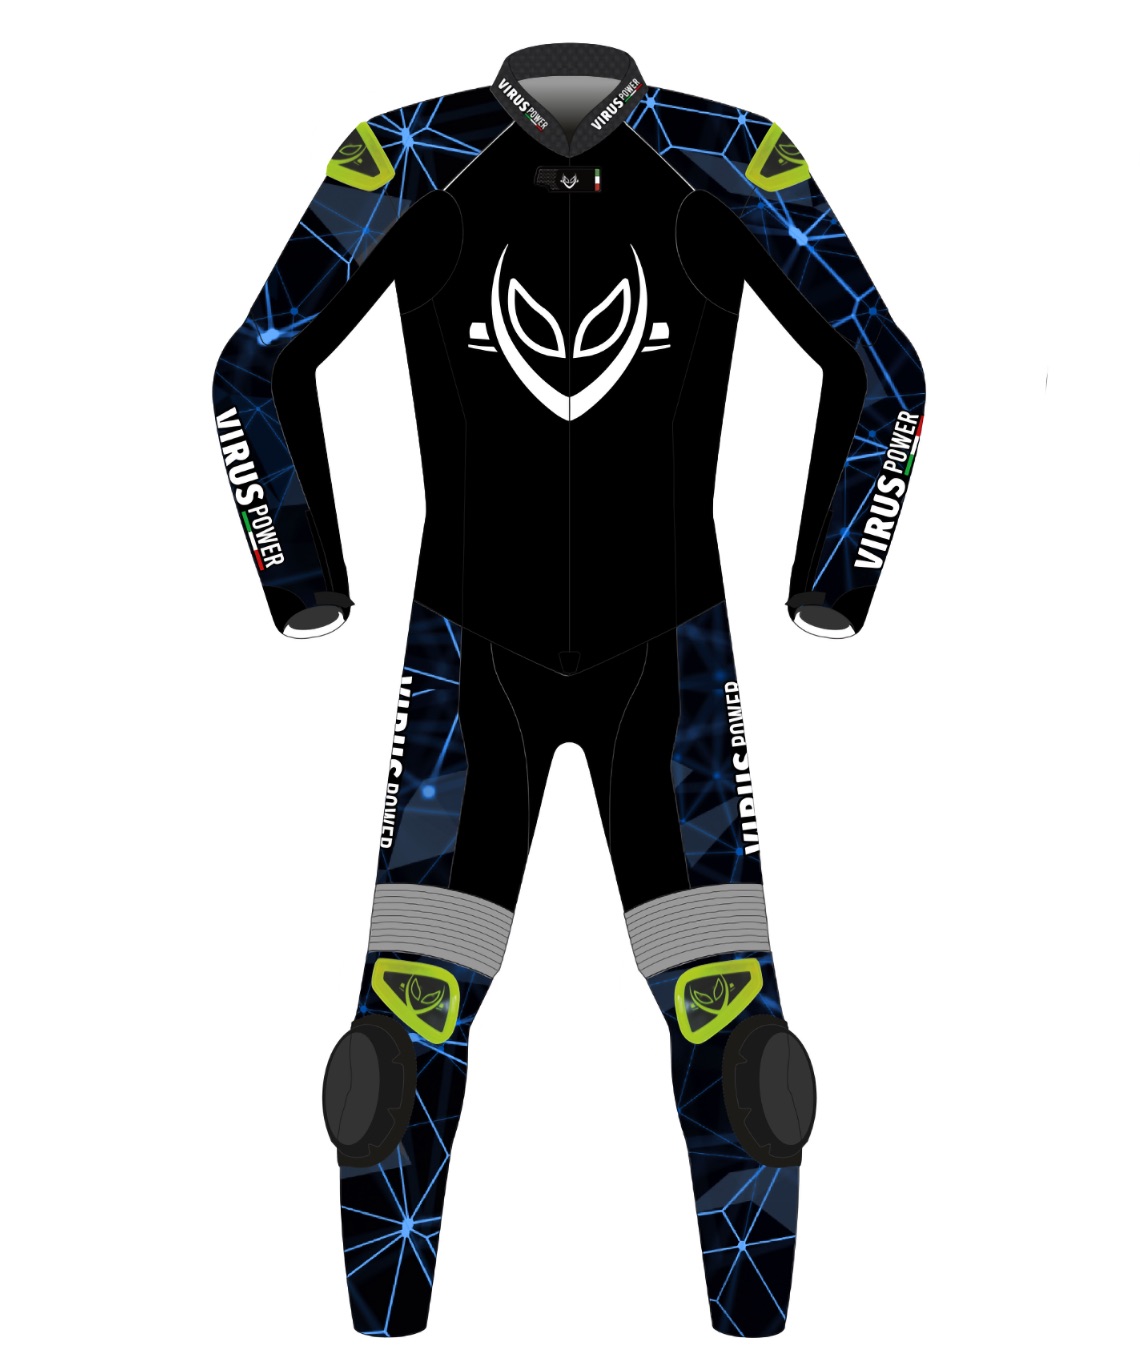 Alien racing suit graphic